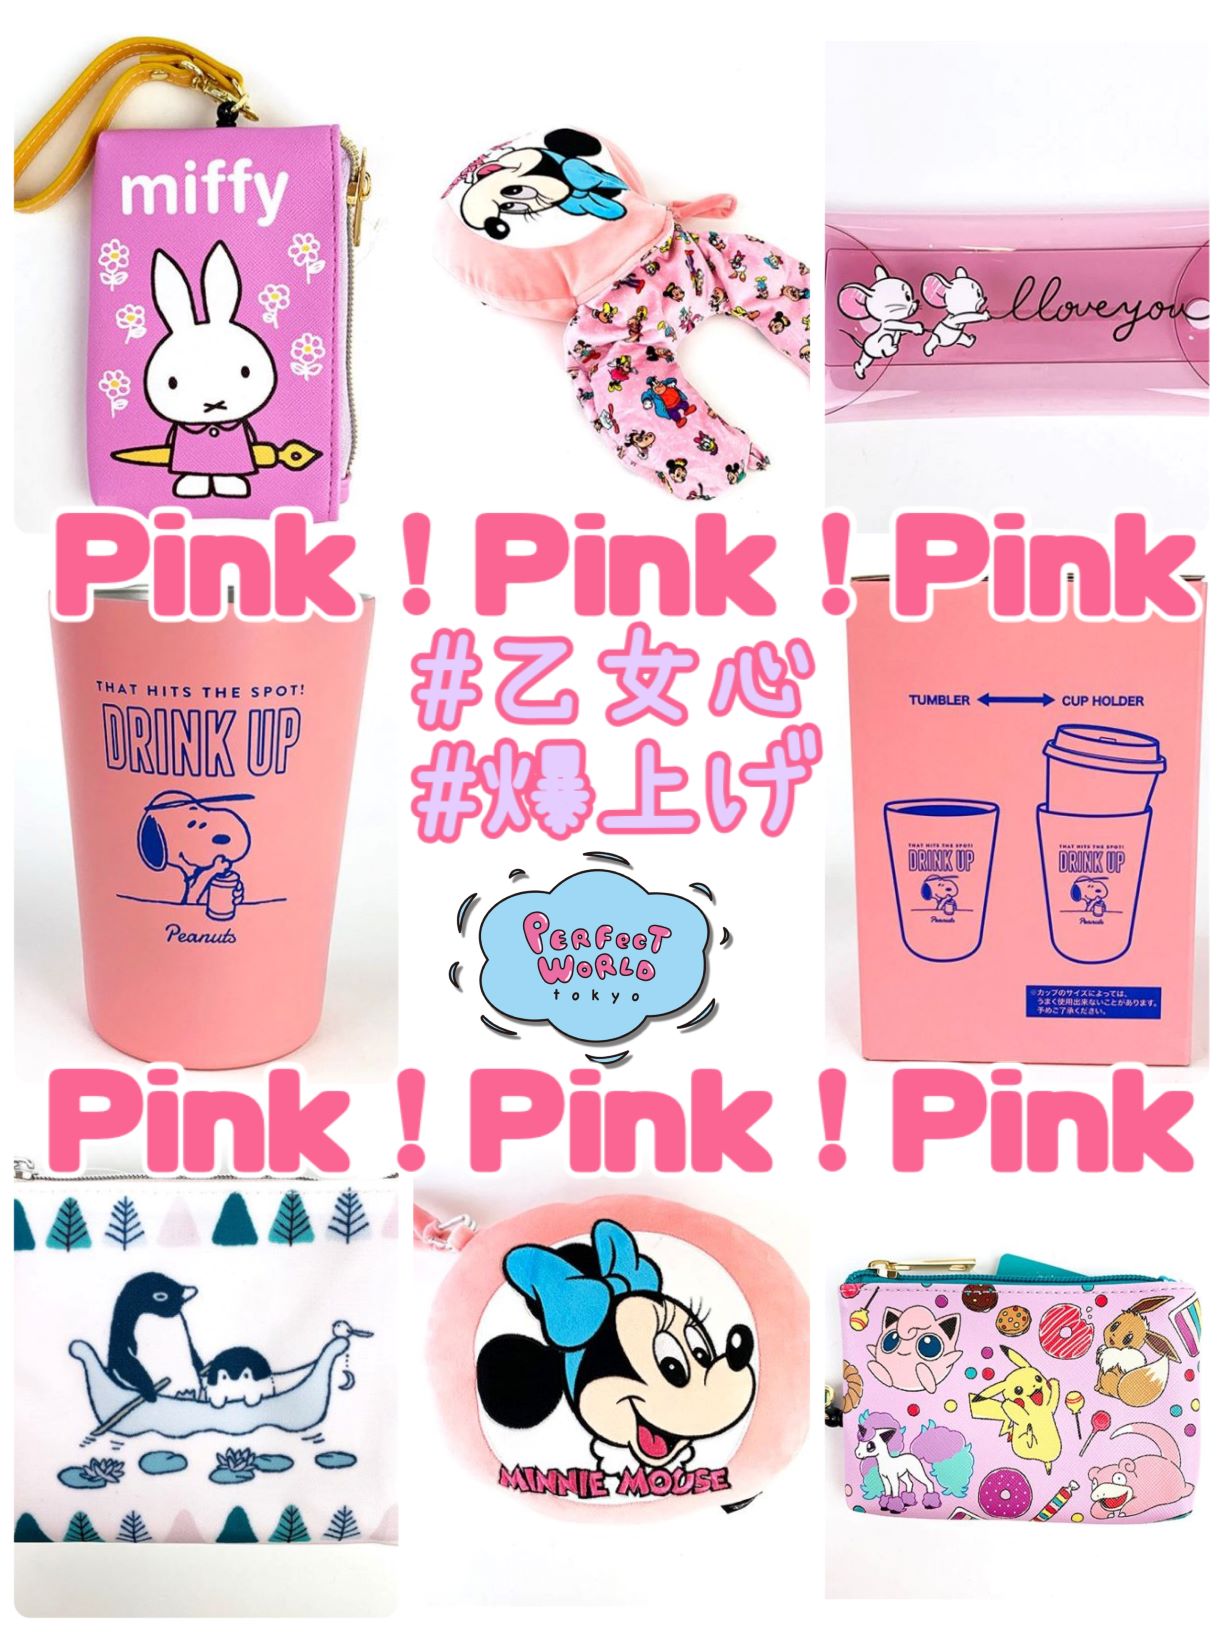 Pink Pink Pink 可愛いもの好き必見 女の子が大好きなピンクグッズまとめてみました キャラクター縛りなし 豊富なラインナップなど Perfect World Tokyo